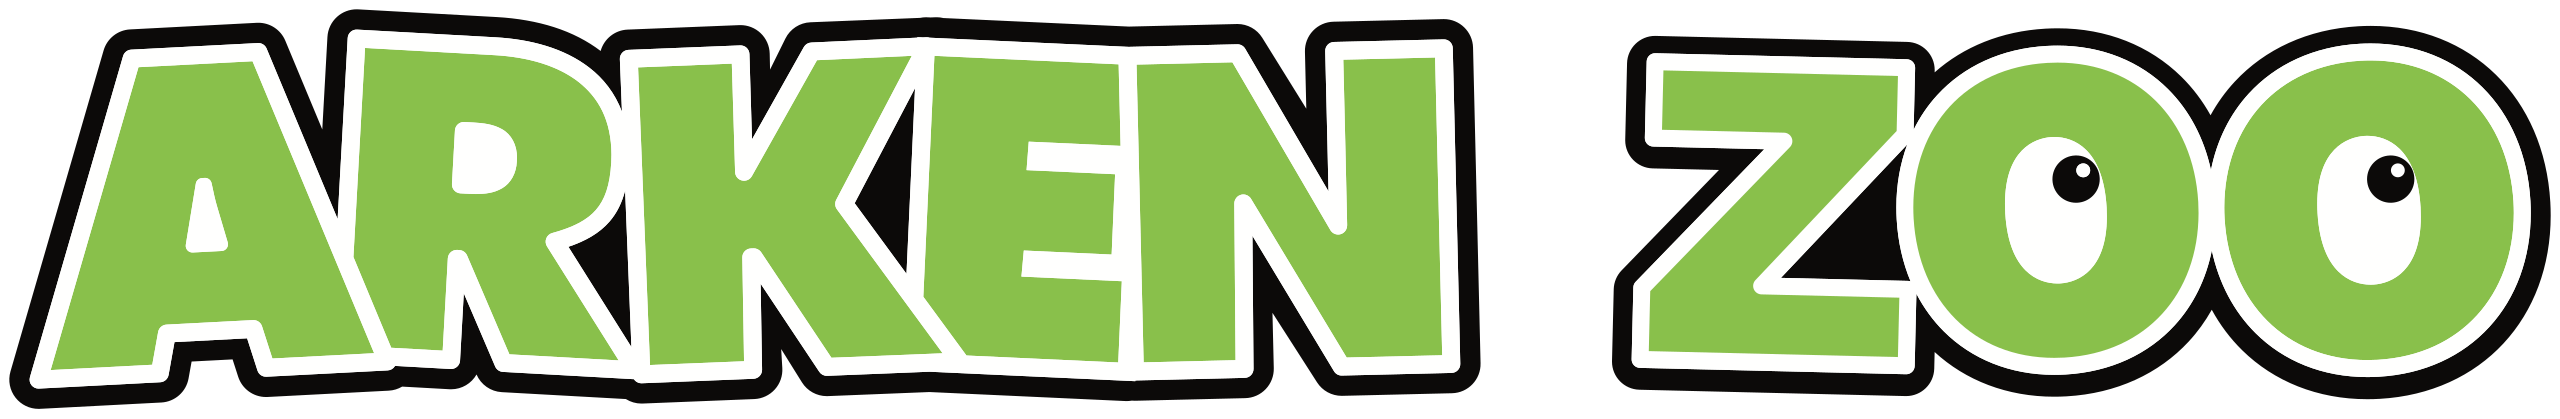 Arken Zoo logo